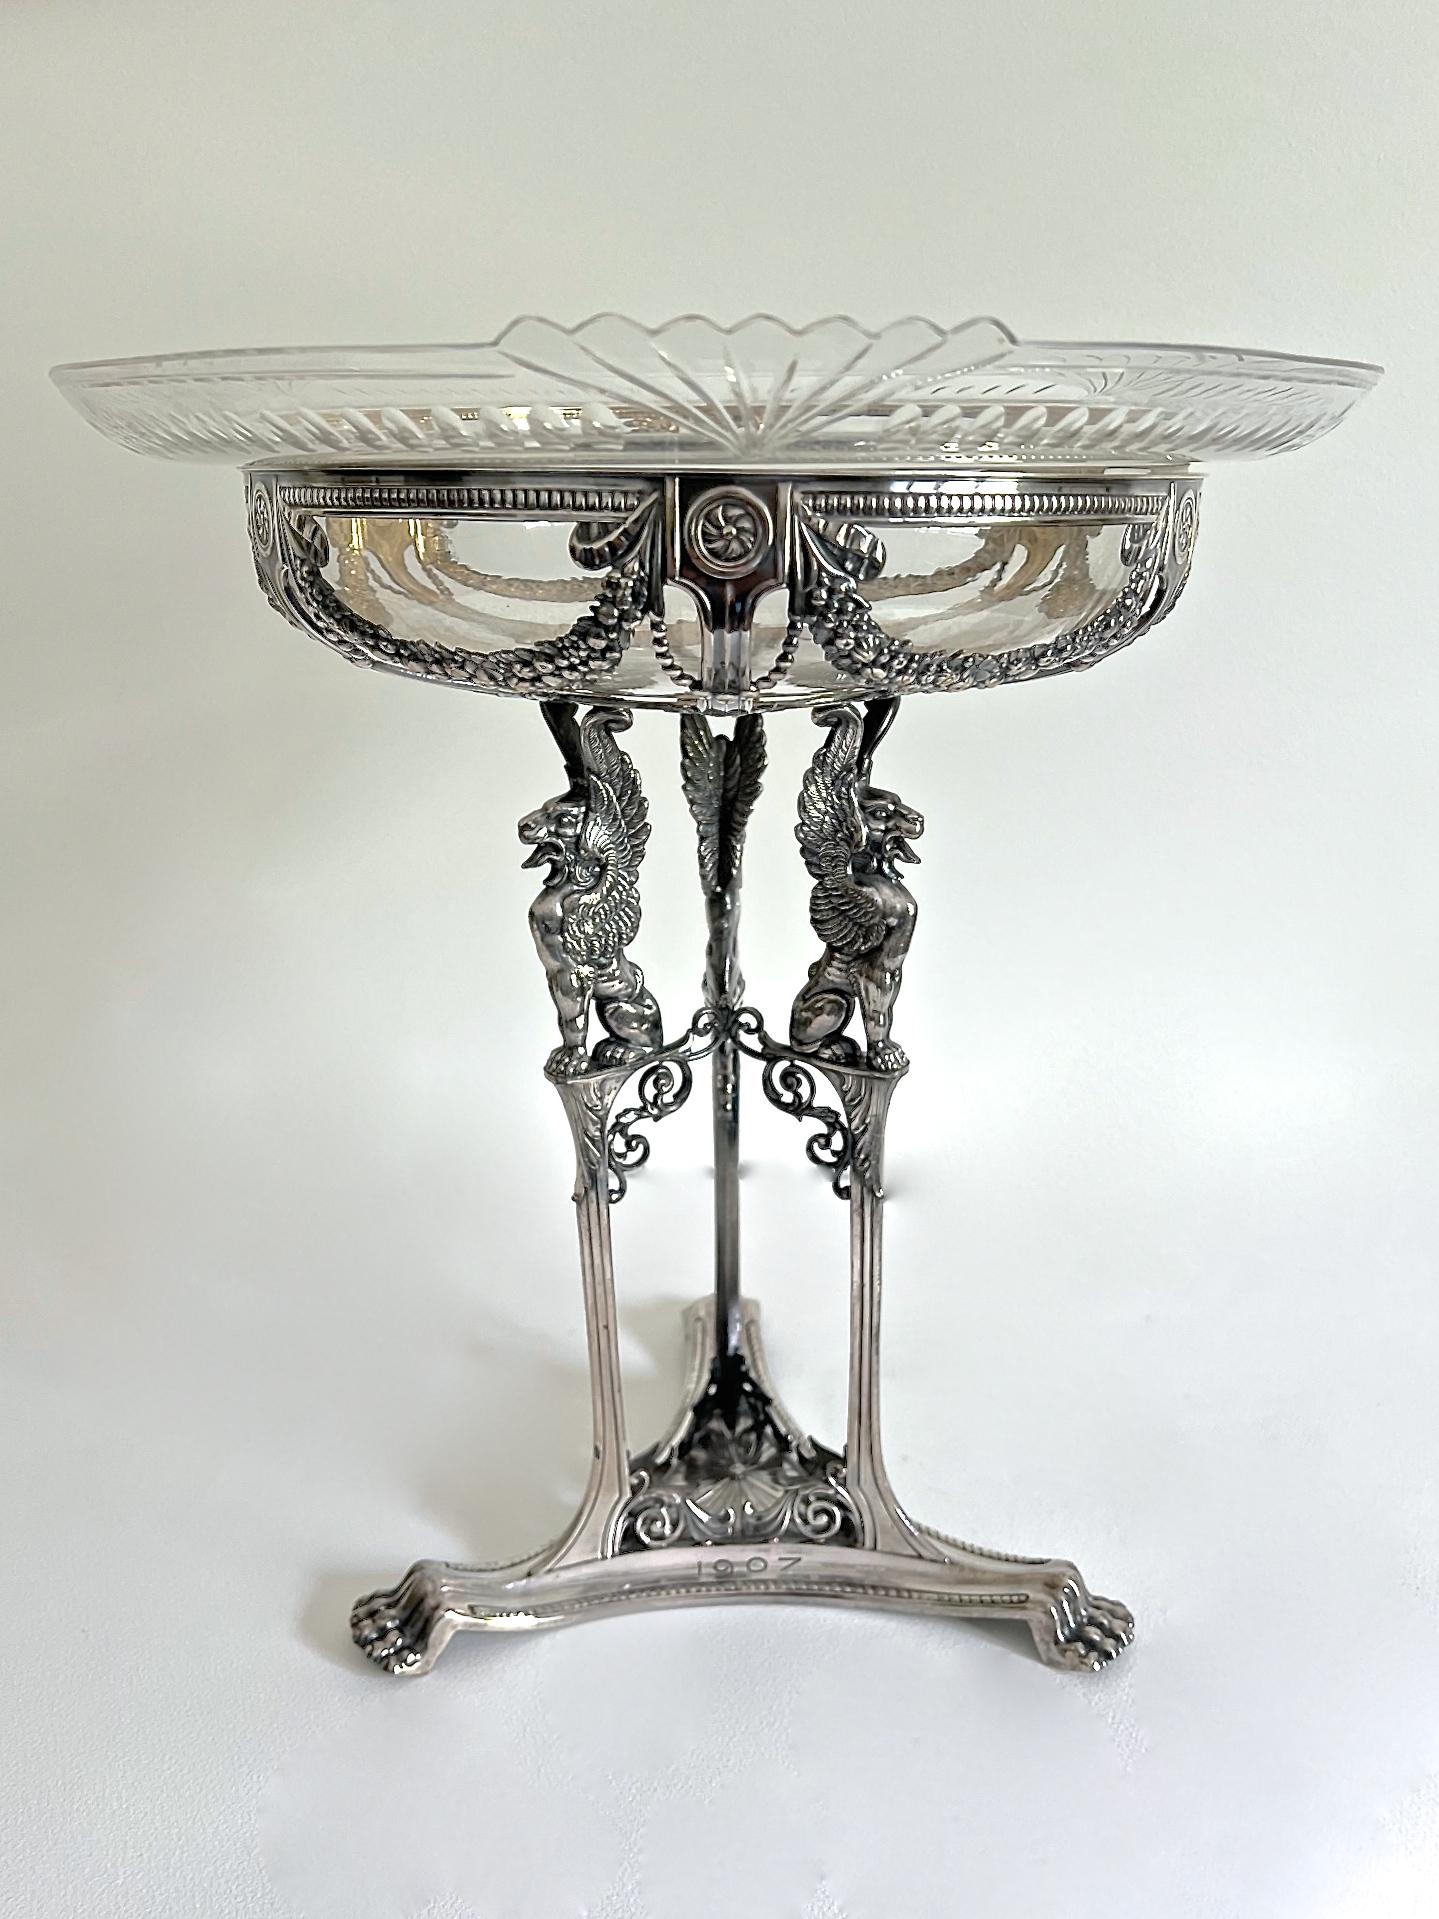 Un superbe centre de table WMF en métal argenté et verre taillé de style néoclassique. Le trépied est orné de motifs classiques tels que des guirlandes florales, des gryphons, des paterae, des volutes, des perles et des pieds en forme de pattes de